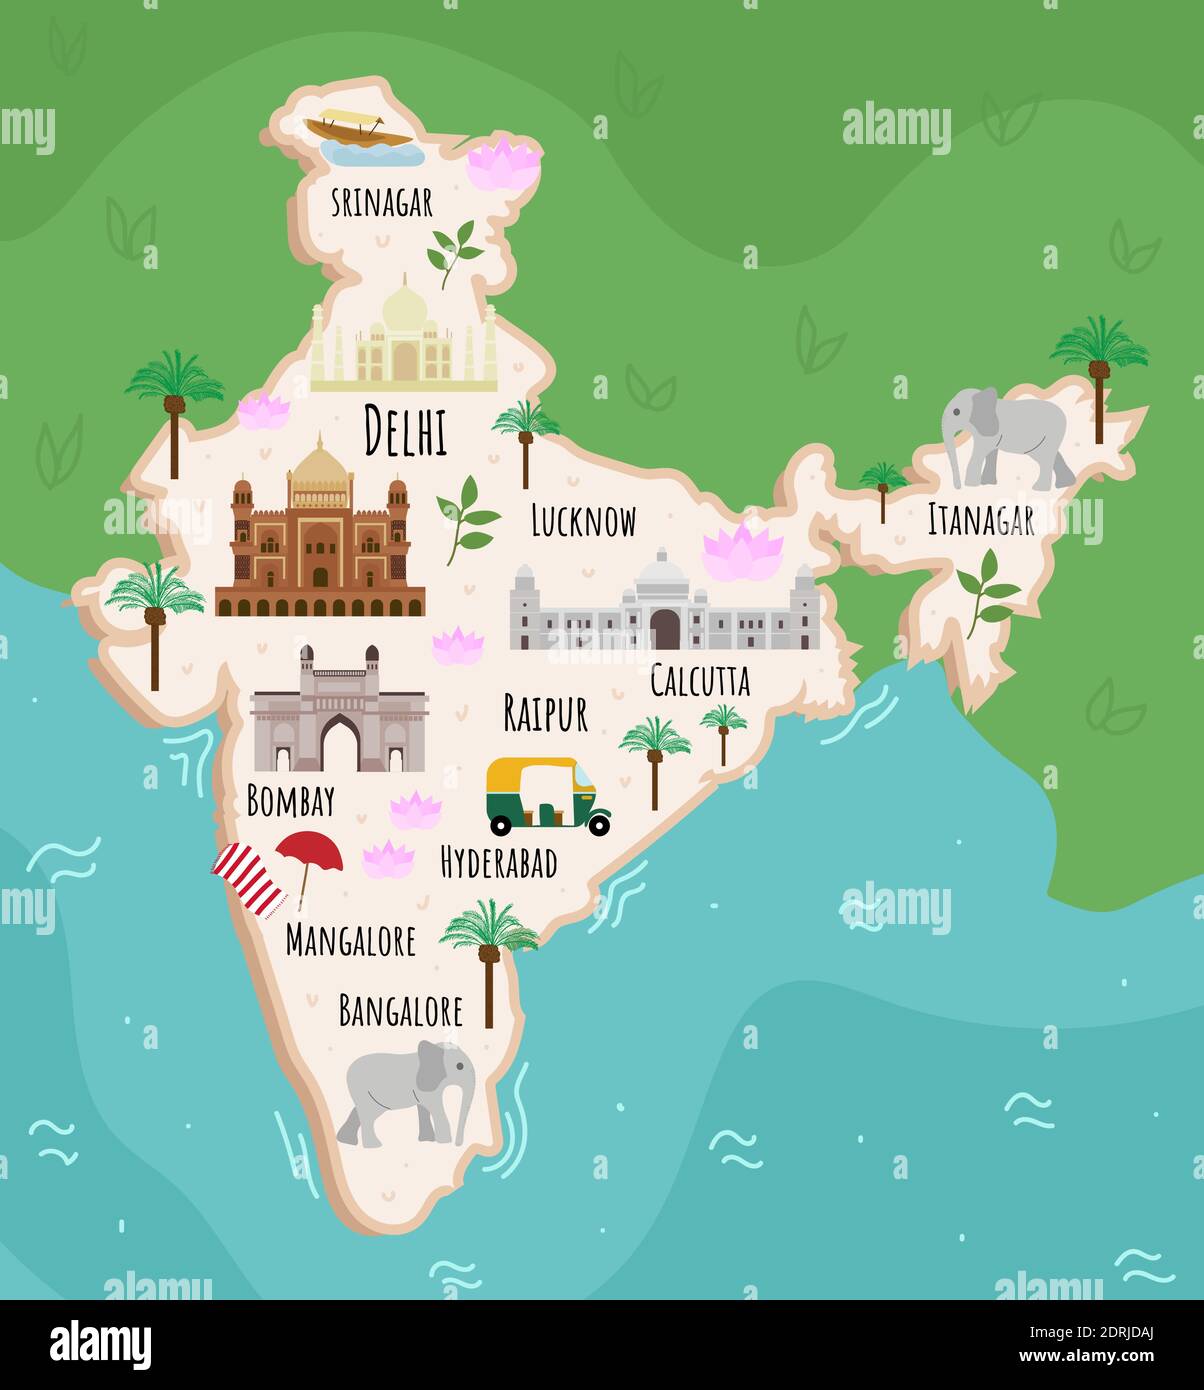 Touristische Infografiken über Indien. Cartoon-Karte des asiatischen Landes. Reise-Illustration mit Sehenswürdigkeiten, Gebäuden, Lebensmitteln und Pflanzen. Delhi, Taj Mahal, Bomb Stock Vektor